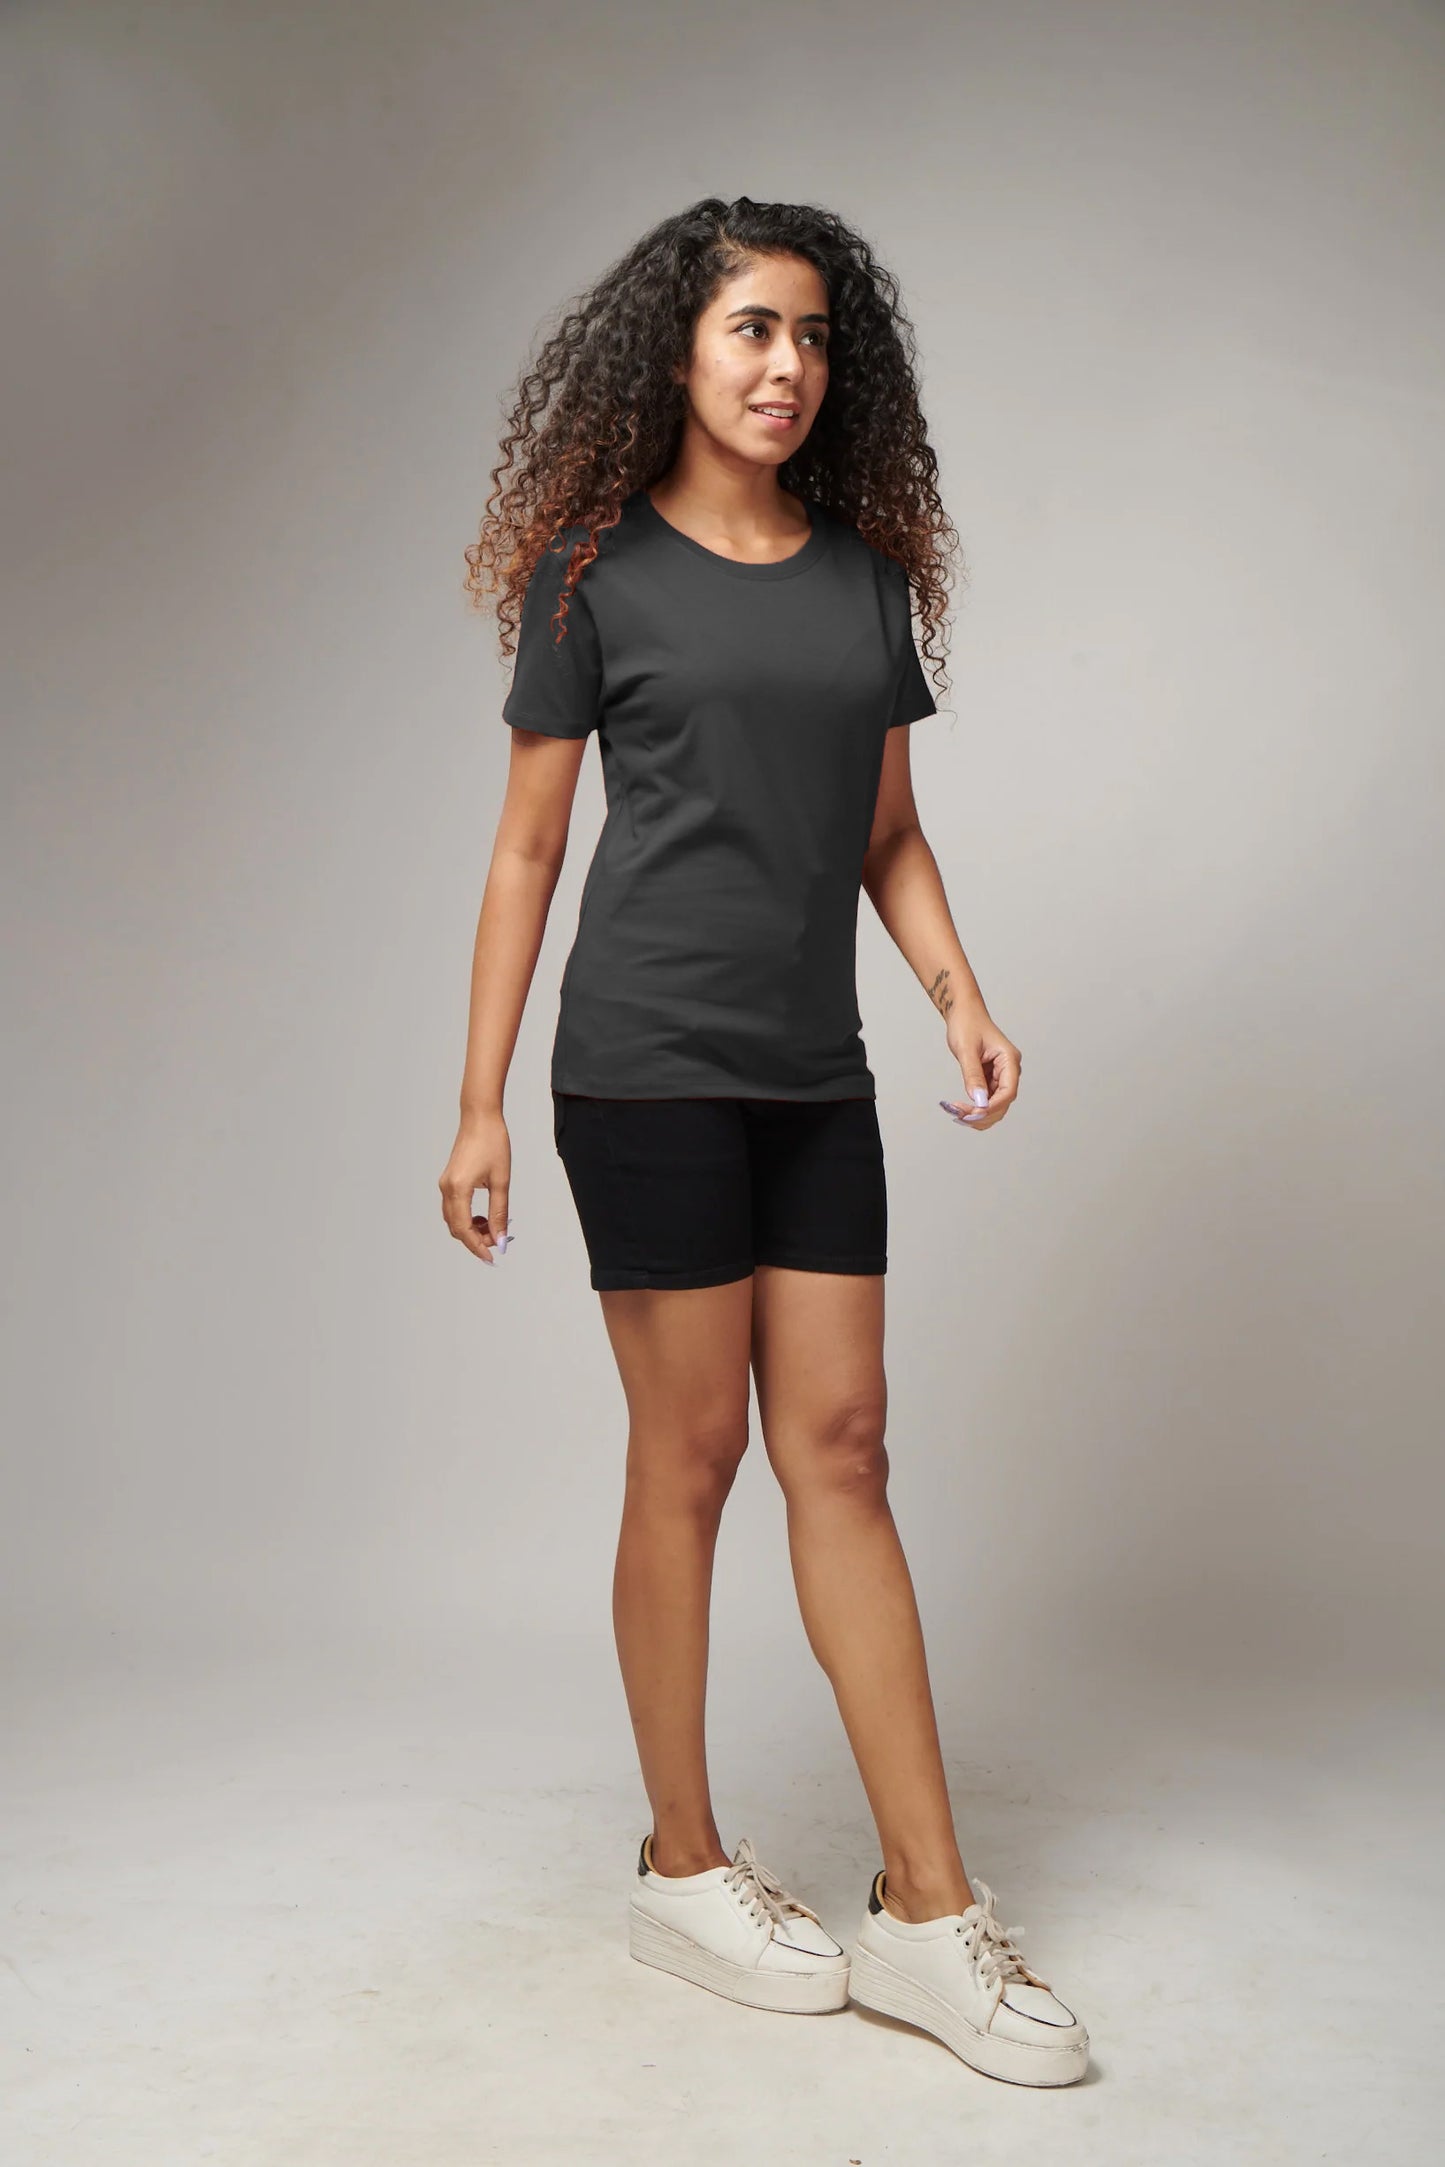 Women's Basic Dark Gray Half Sleeves T-Shirt